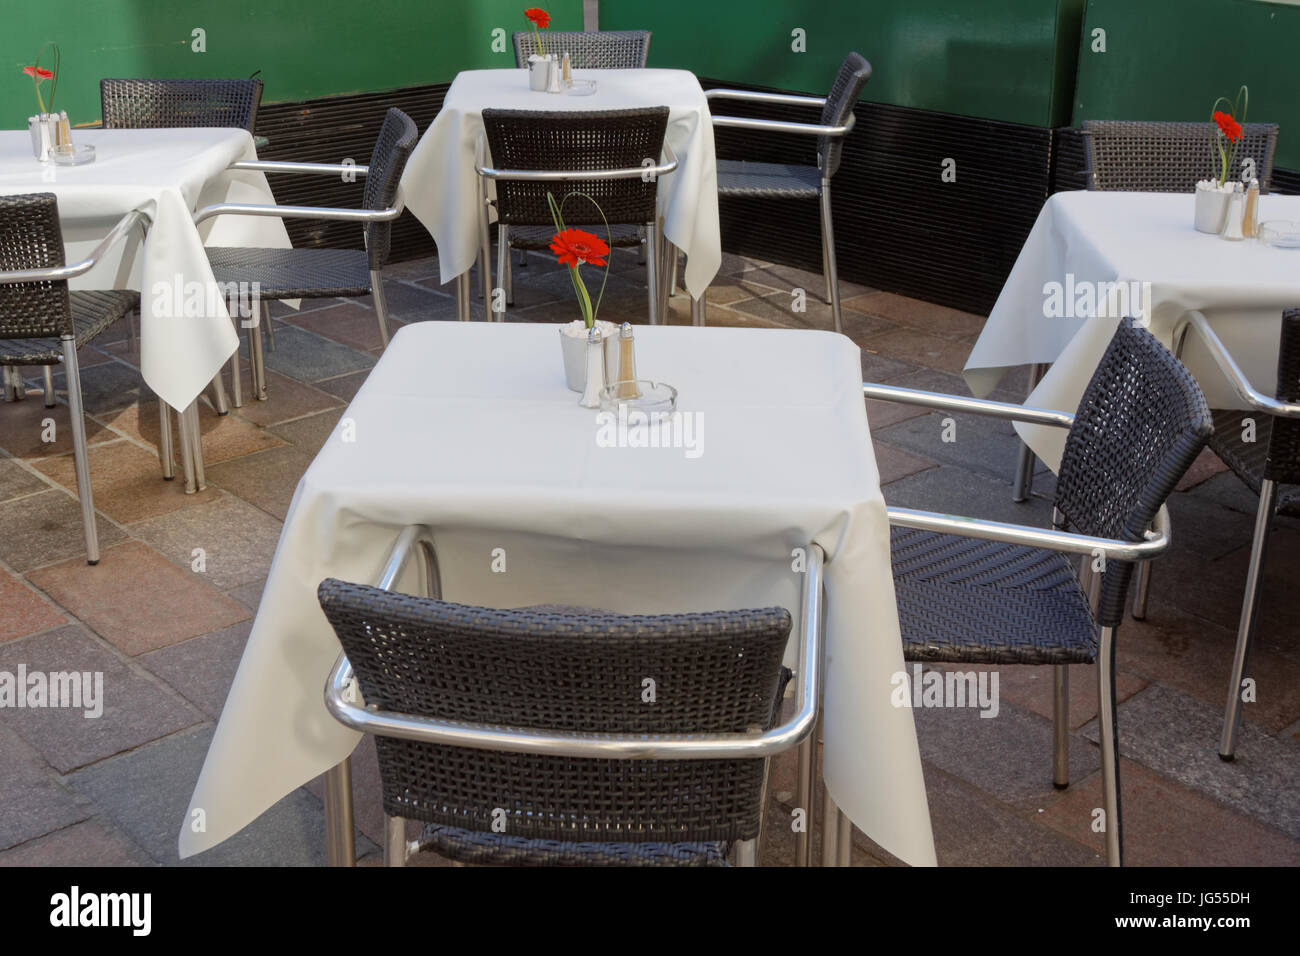 Tische in einem Restaurant leer mit weißen Tischtuch und einzelne romantische rote rose Speeddating Stockfoto